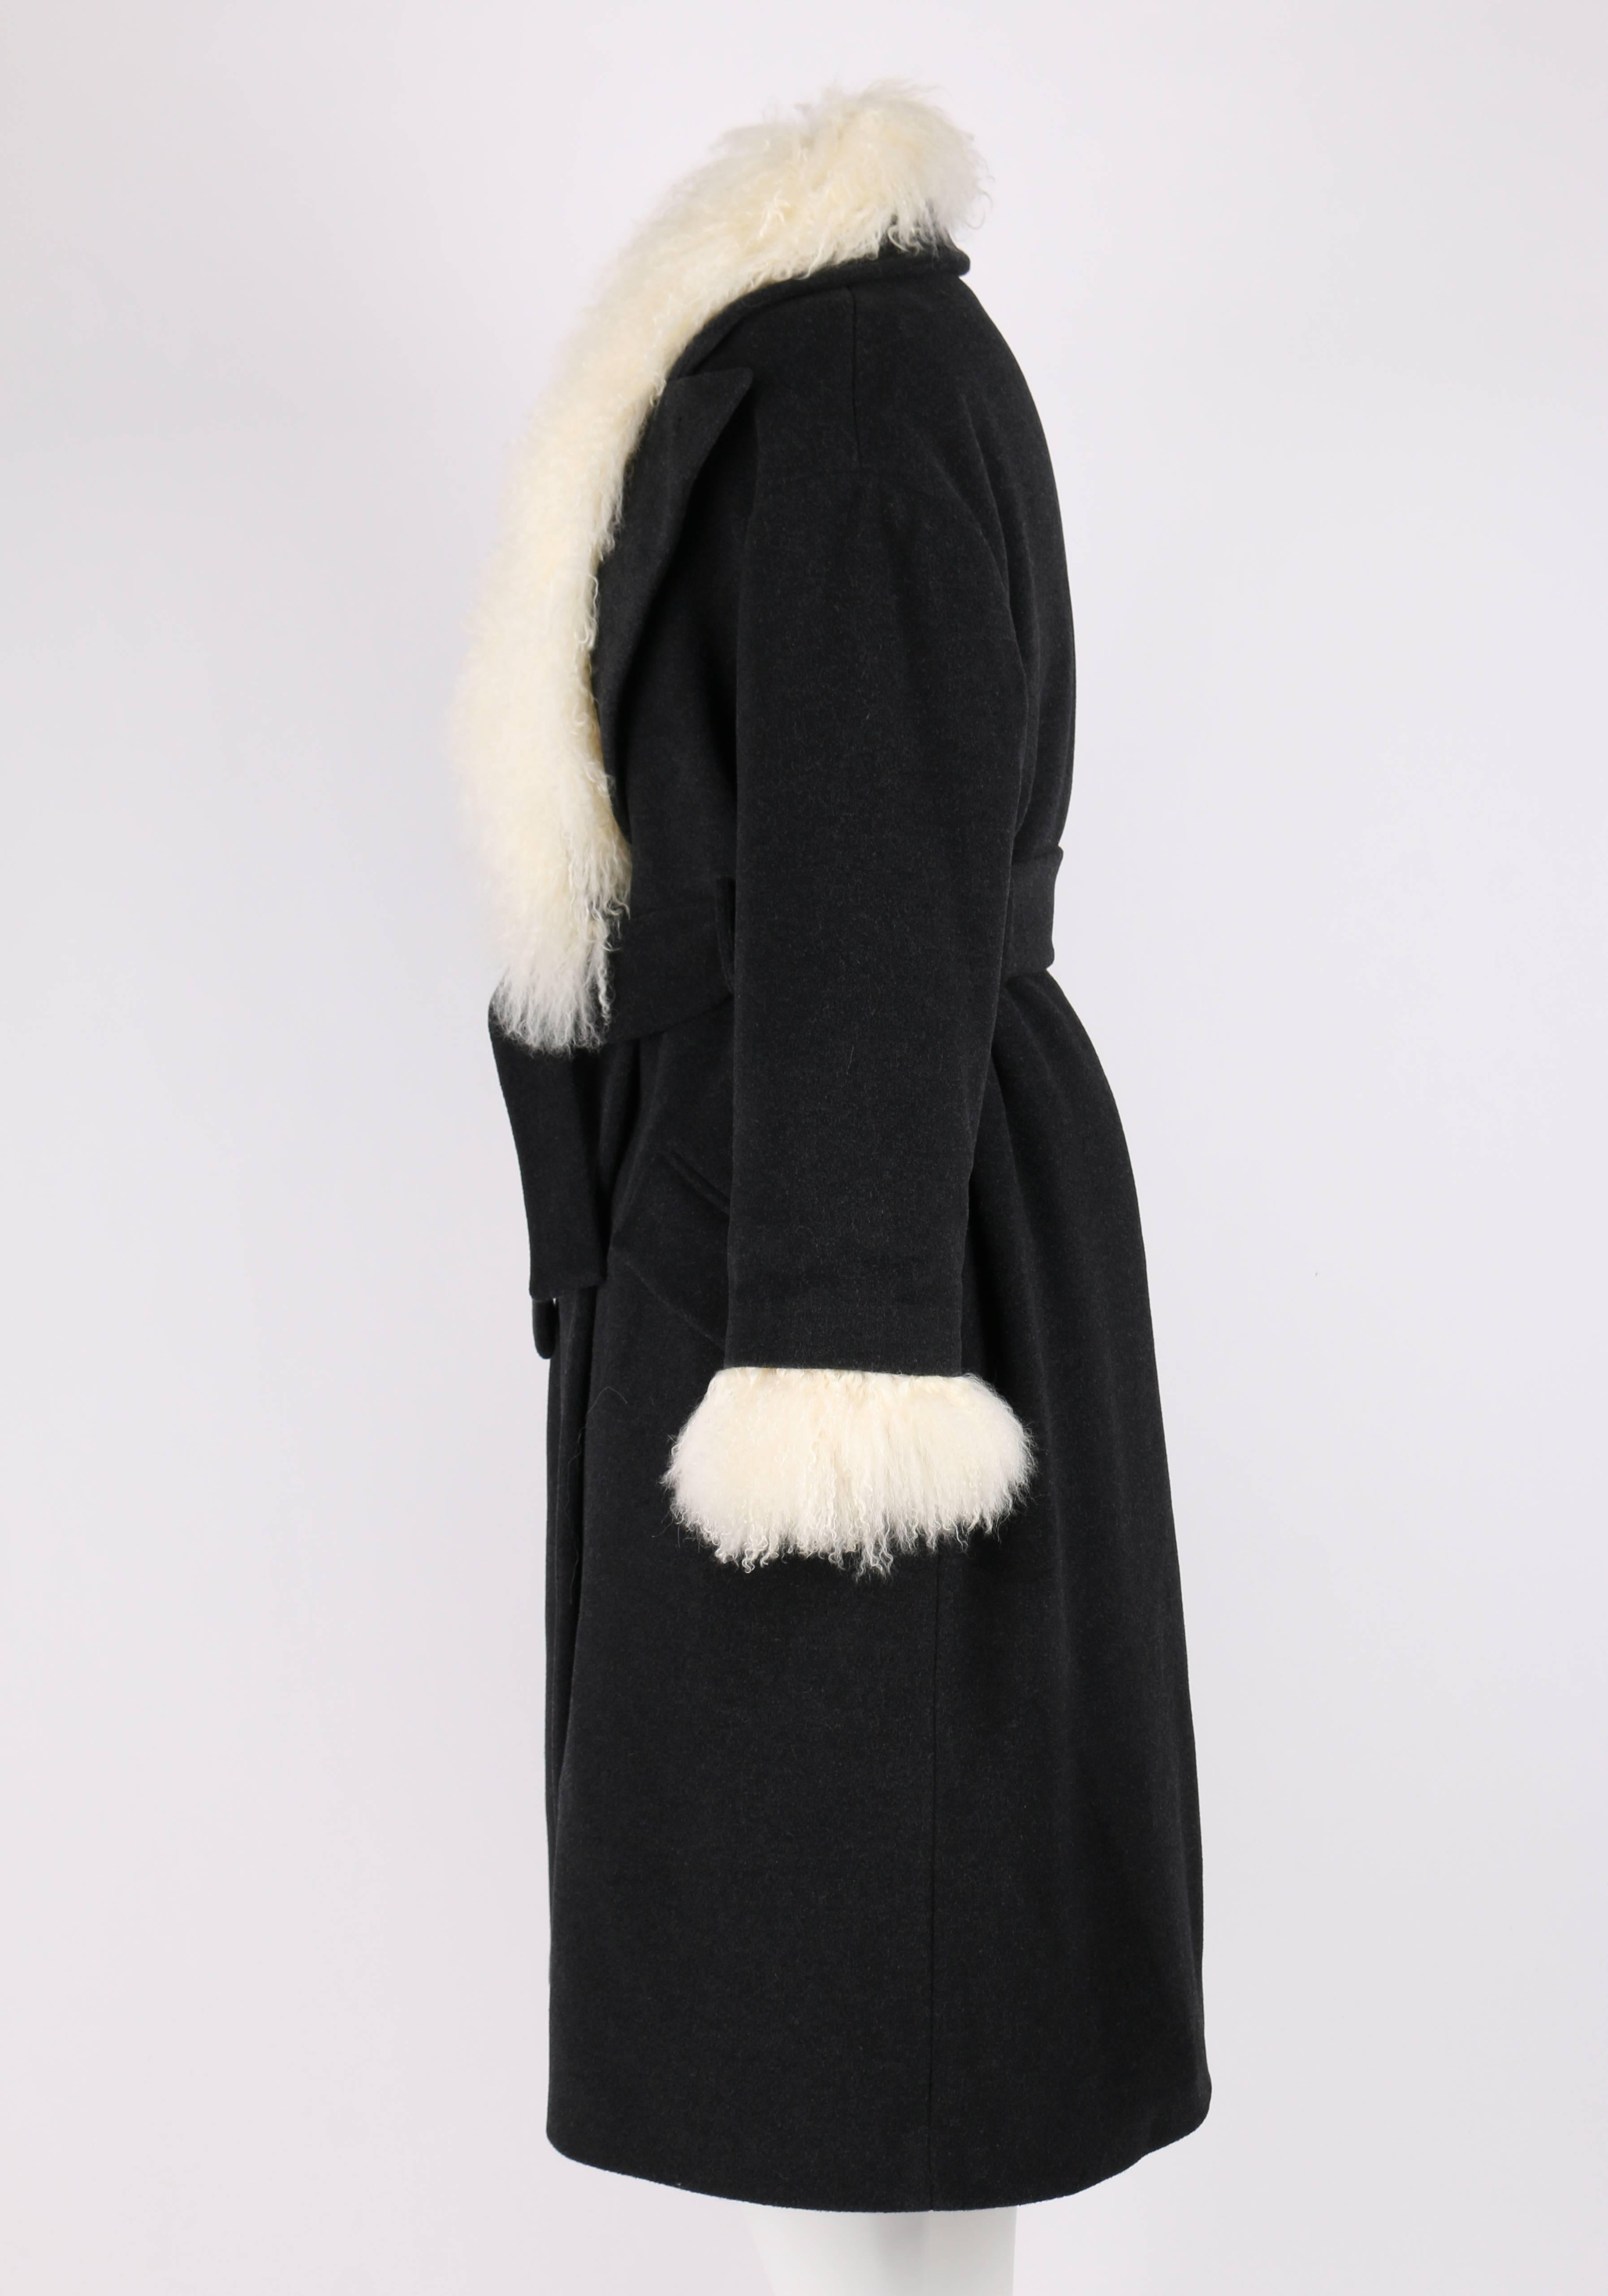 black mongolian fur coat